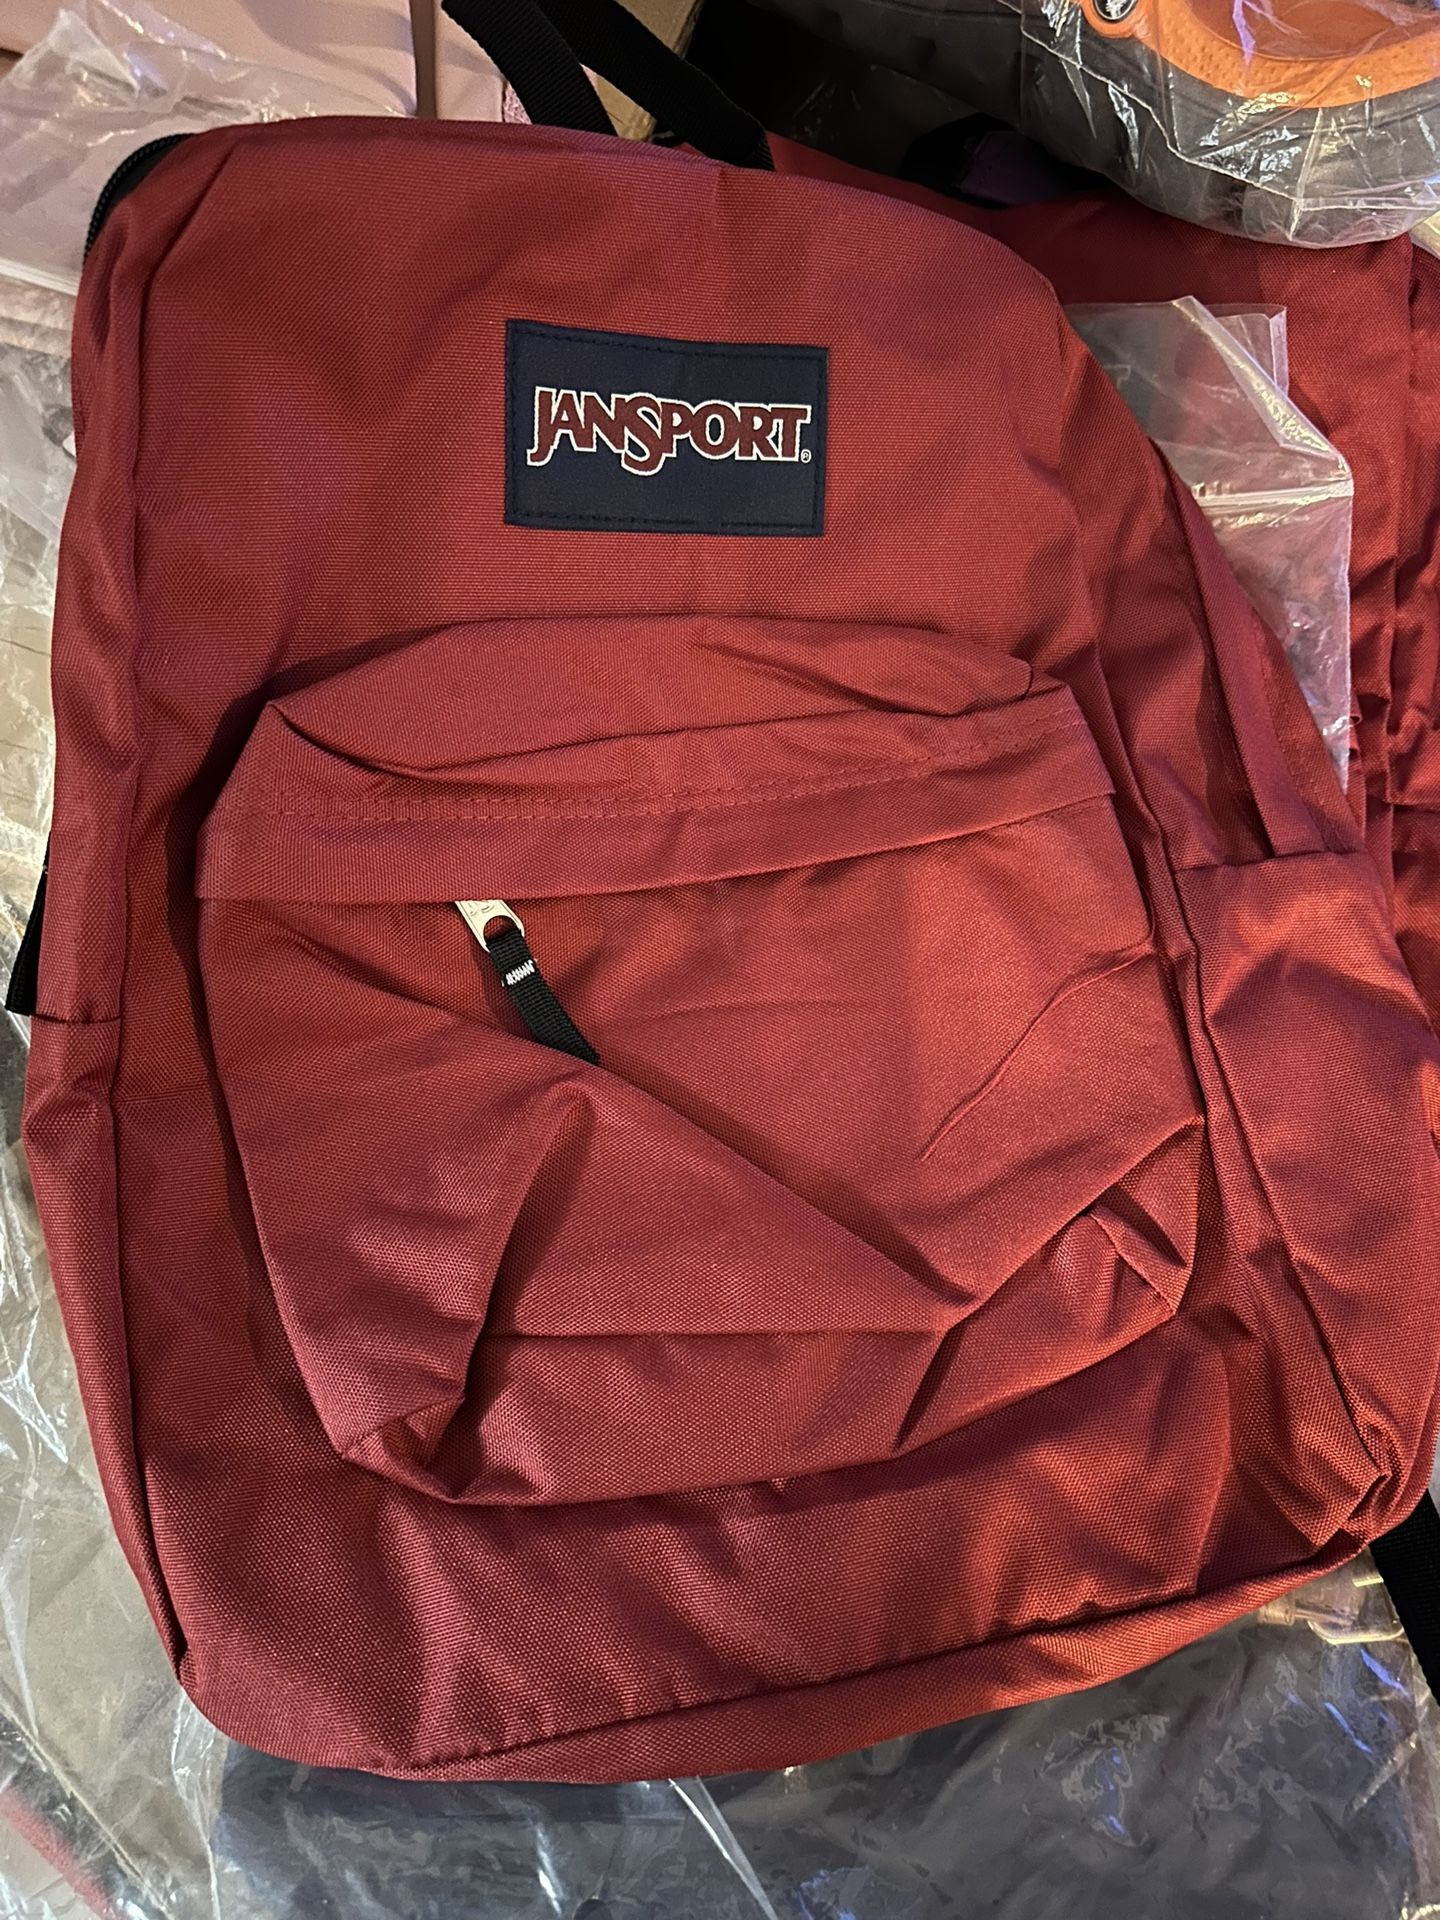 Jansport Backpack New